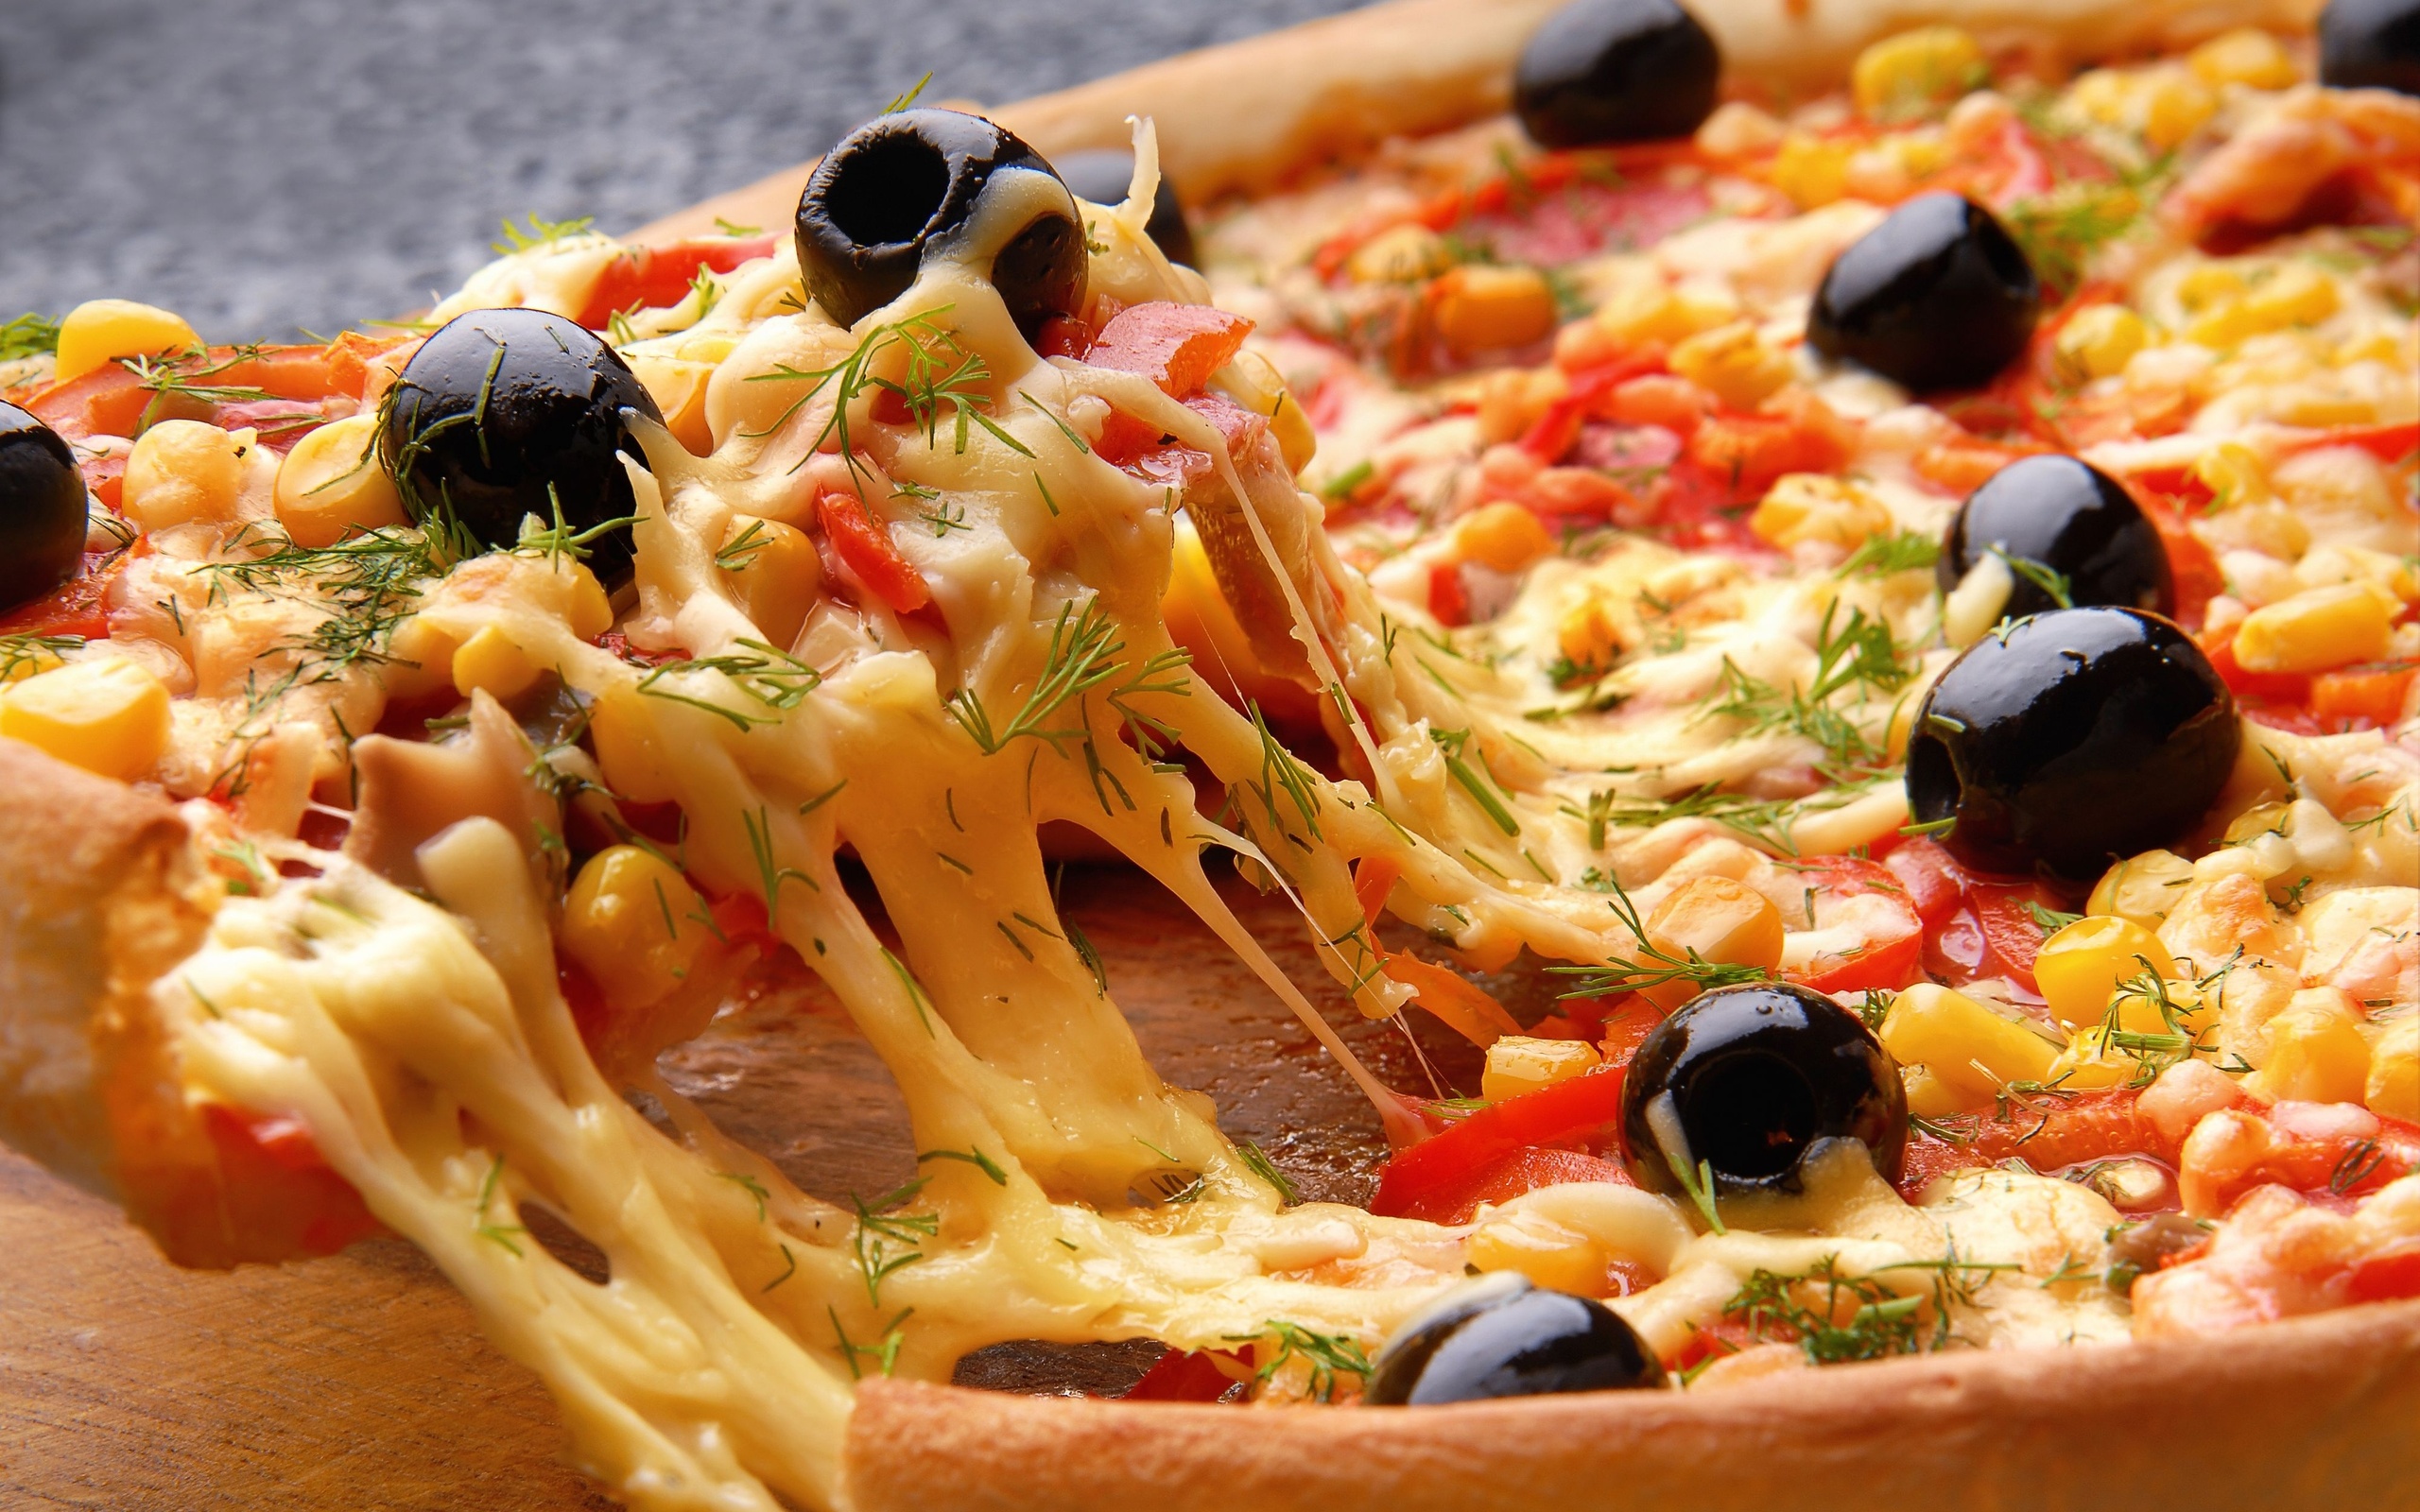 Sabrosisimo catering a domicilio, el mejor catering de pizzas para tu fiesta, cumpleaños, eventos. Pizza party, Pasta party